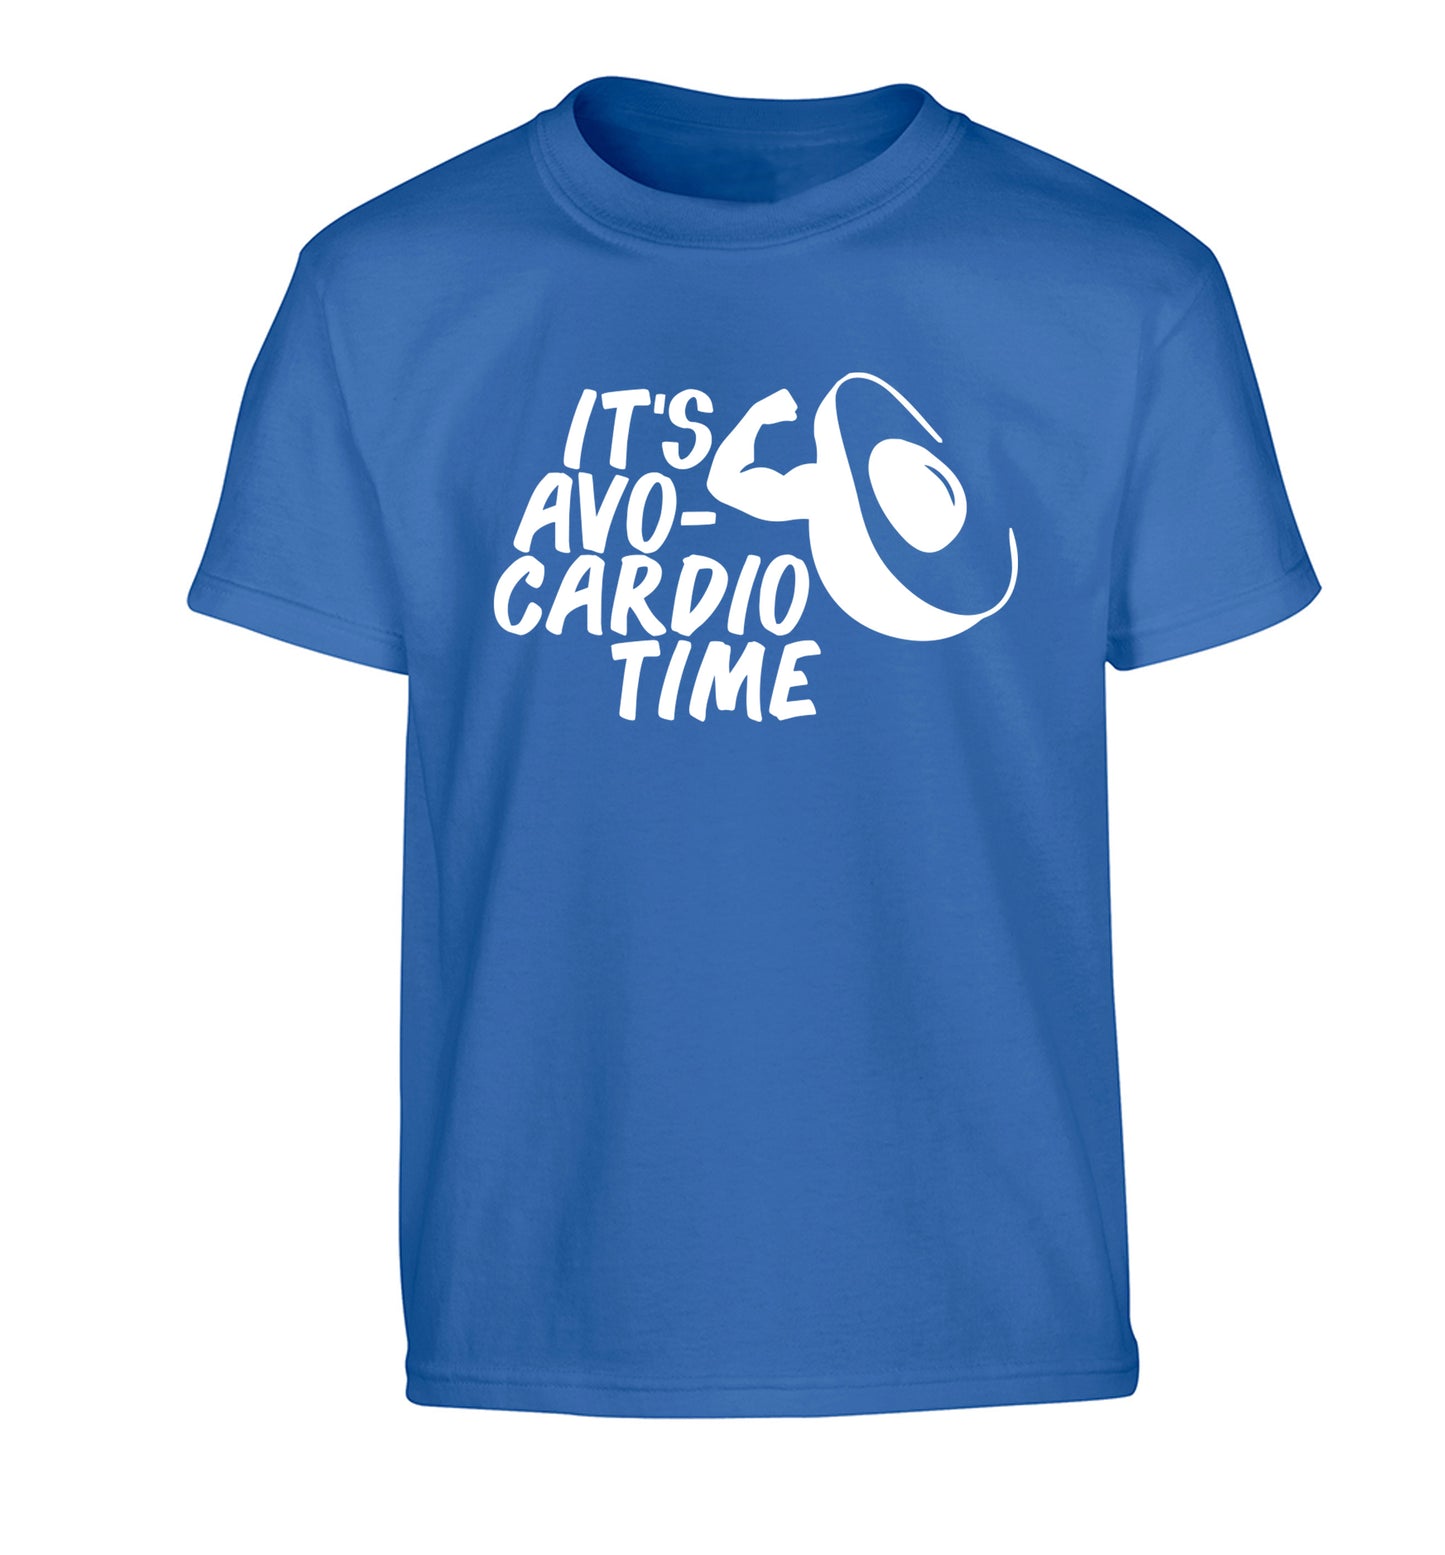 It's avo-cardio time Children's blue Tshirt 12-14 Years